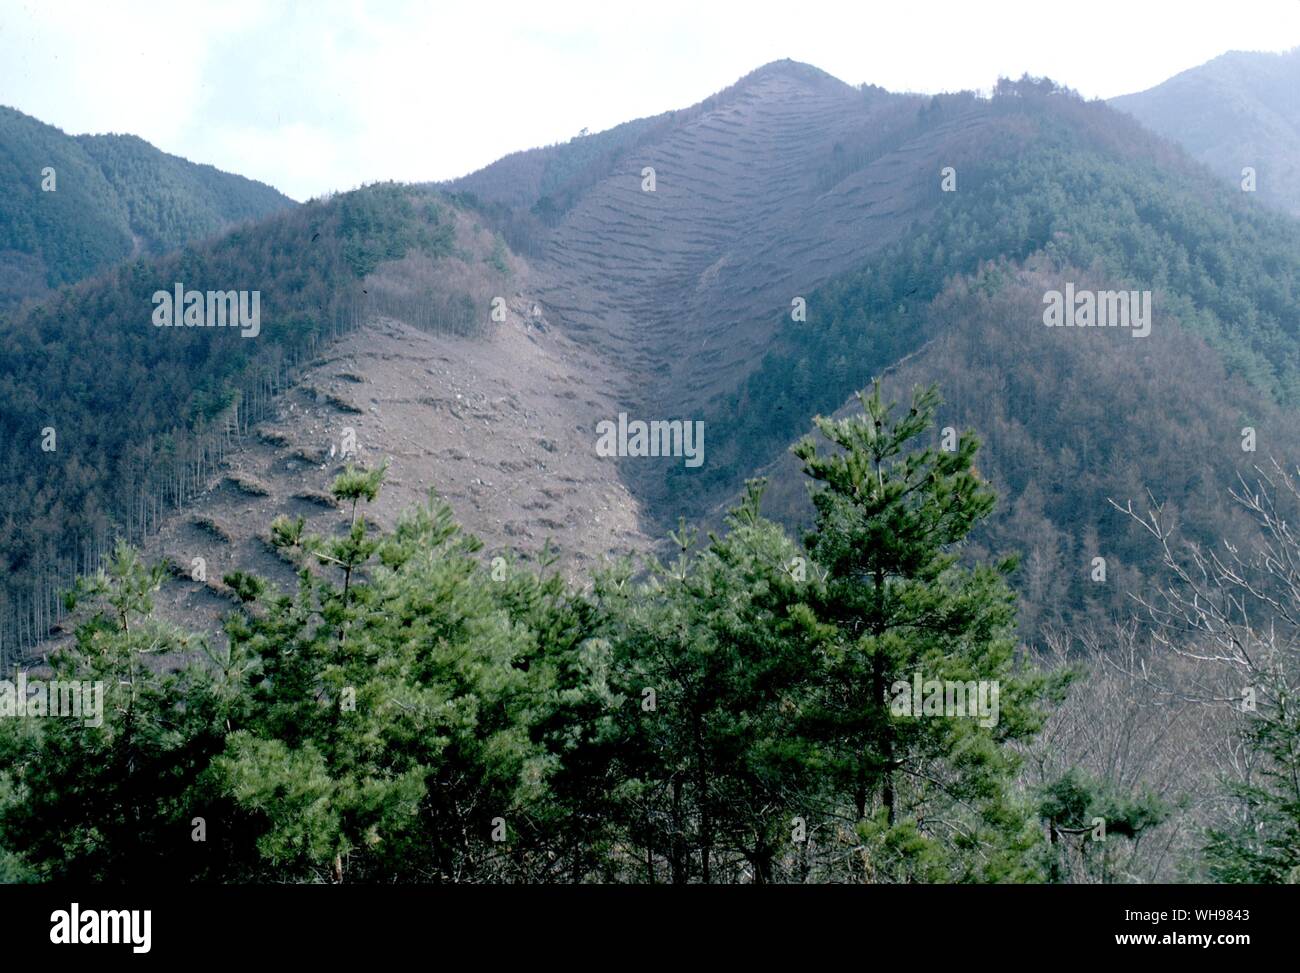 Nonostante le alte catene montuose e valli profonde circa il quaranta per cento del Giappone della foresta è piantato in commercio. Foto Stock